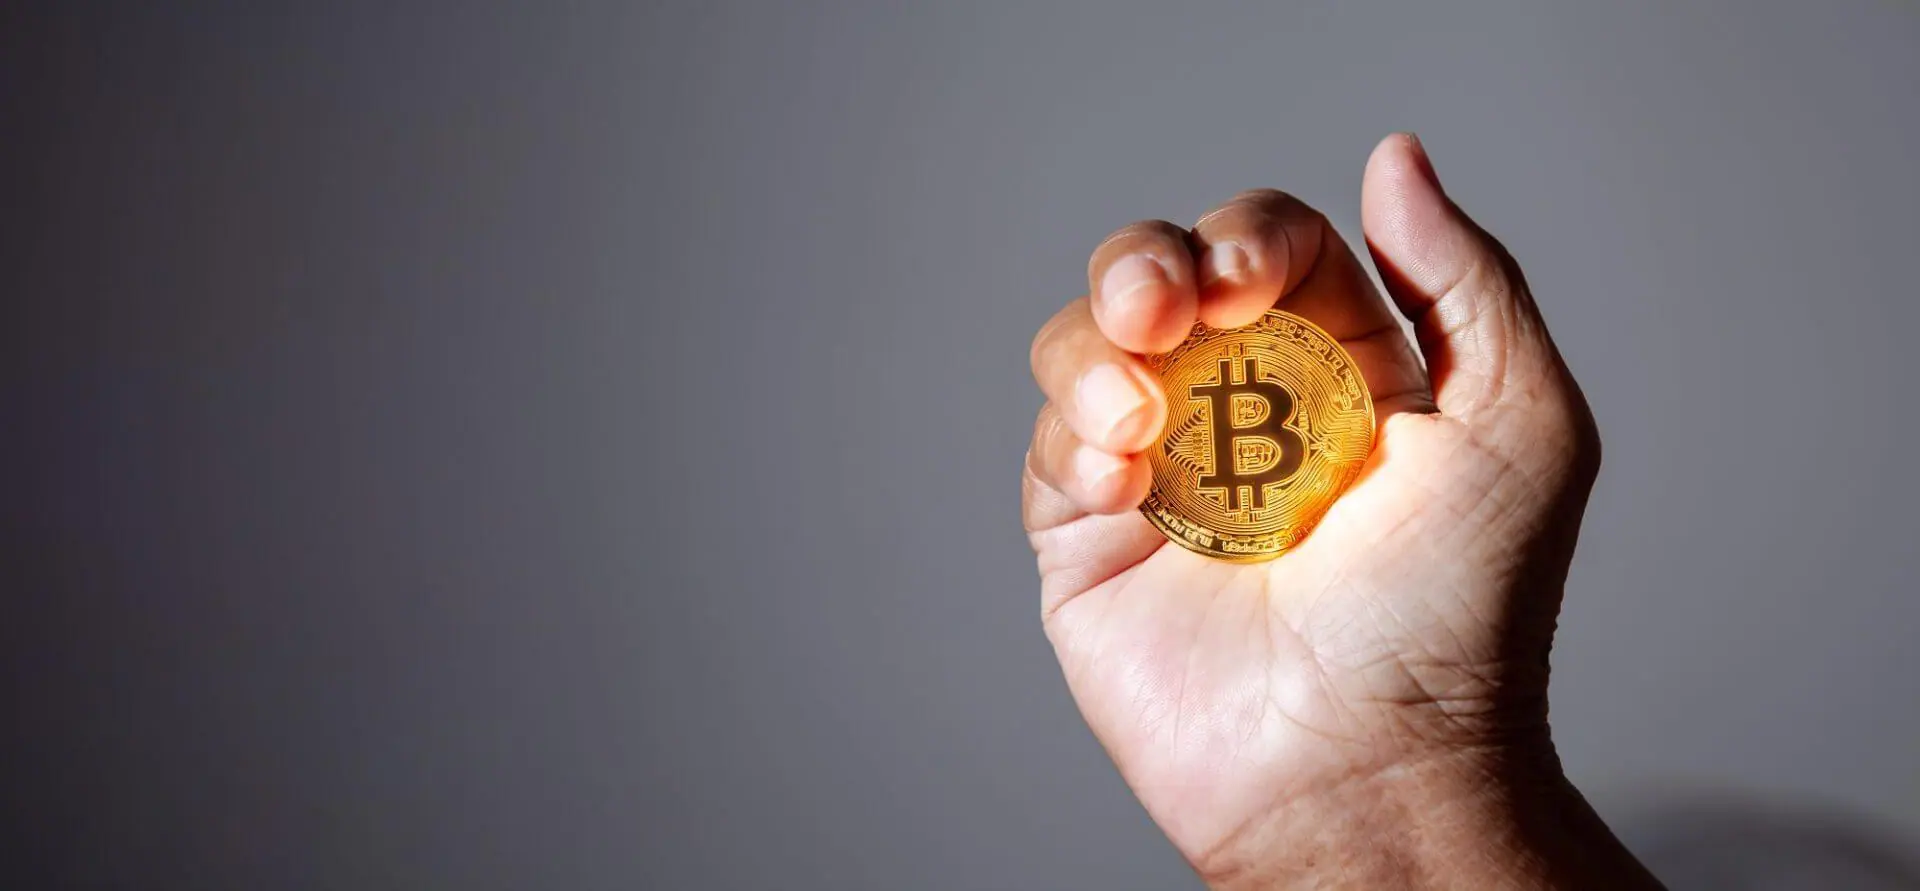 Deutsche Regierung verkauft Bitcoin im Wert von 195 Millionen Dollar